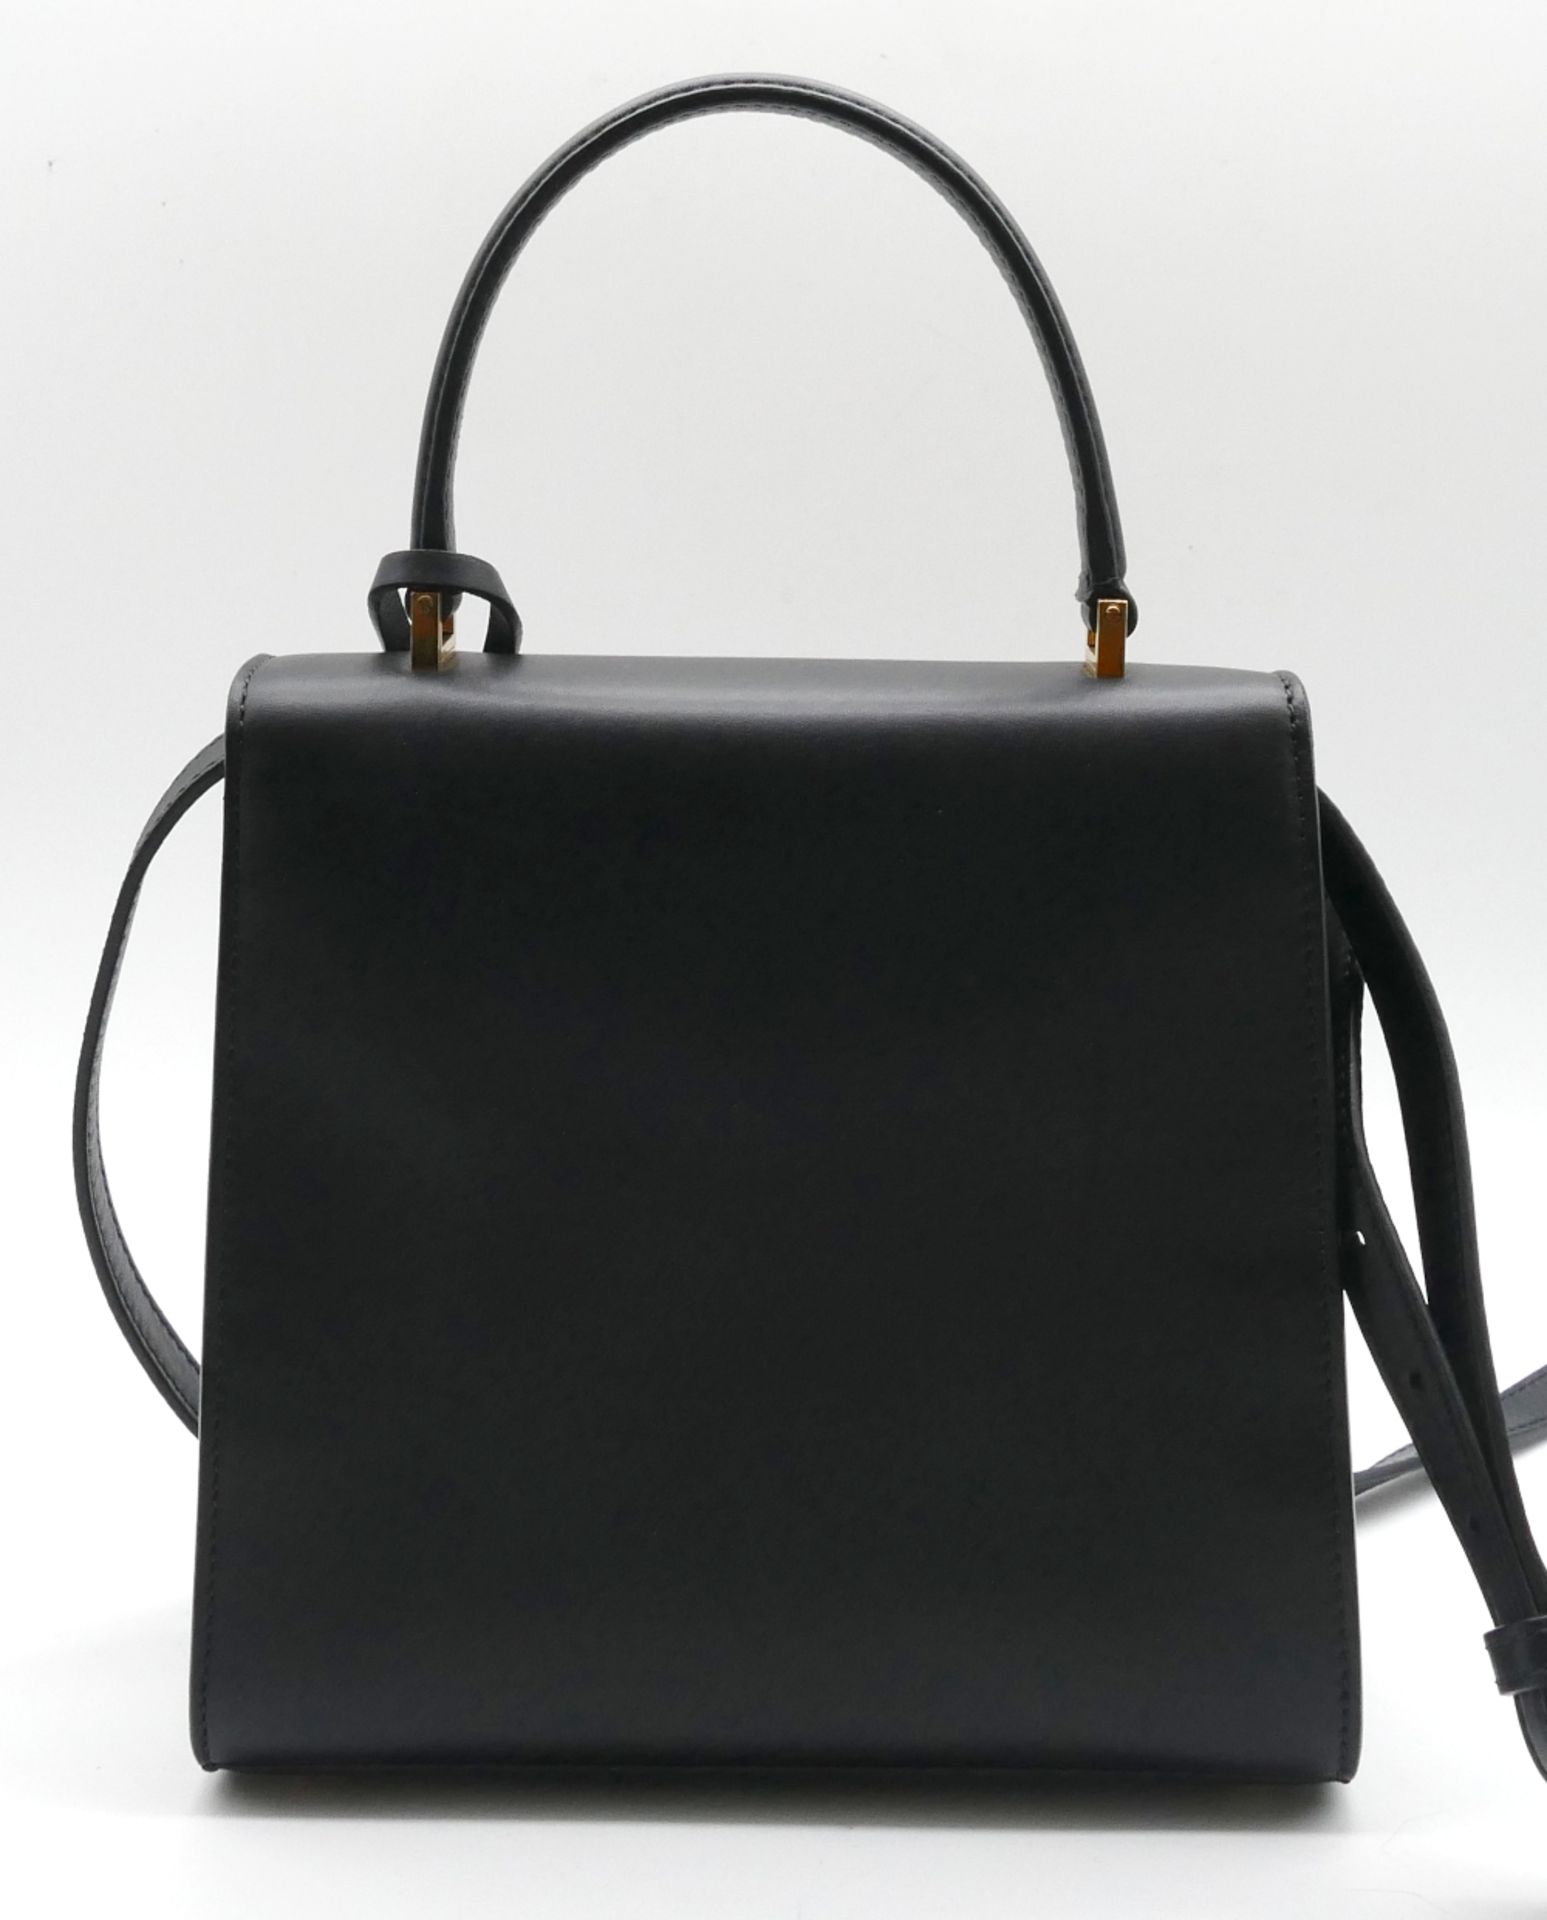 1 Damenhandtasche VERSACE, schwarzes Glattleder, mit Schulterriemen (abnehmbar), mit Schlüssel und S - Image 2 of 2